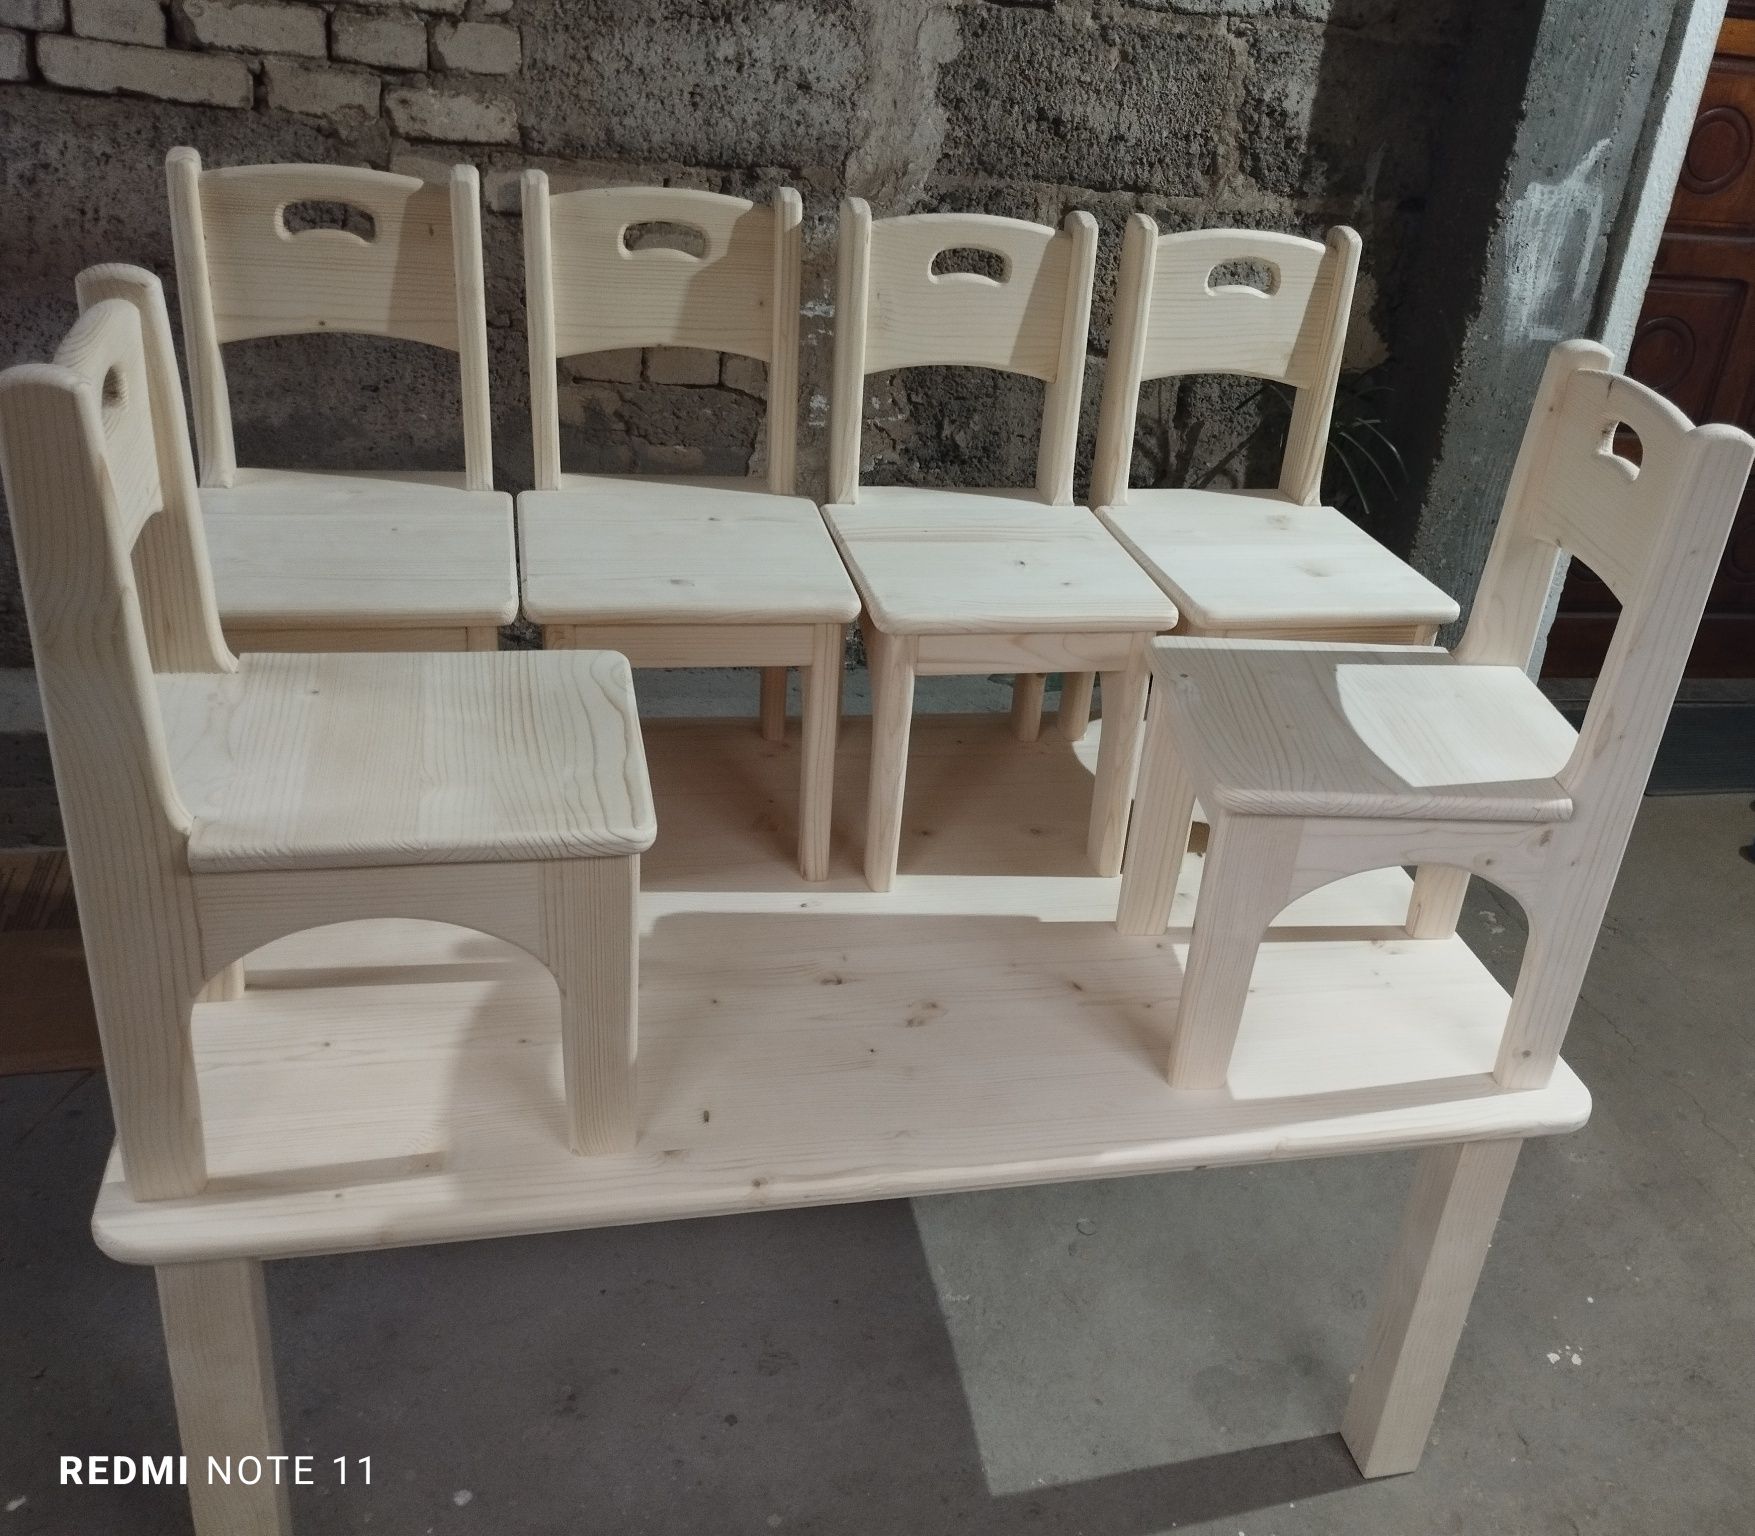 Дървени столчета и маса